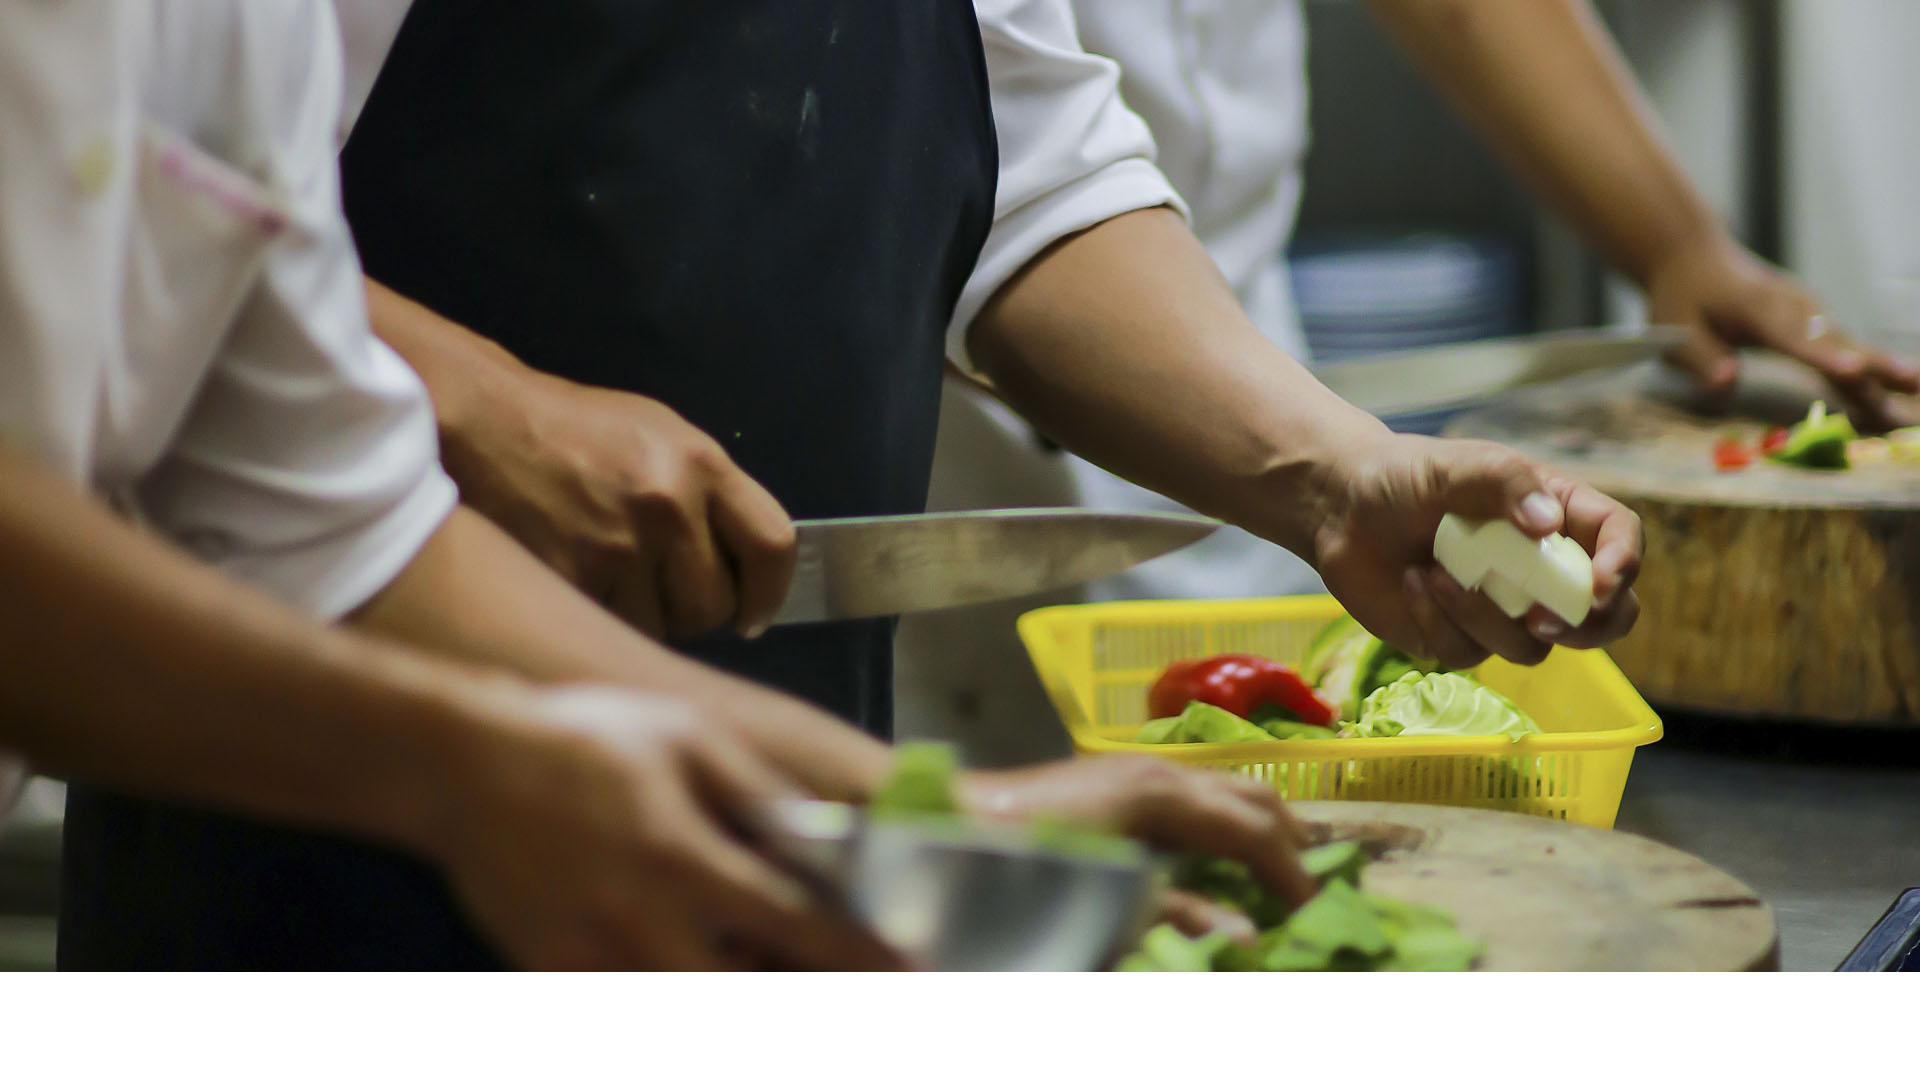 Linkers es la consultora encargada de buscar a 300 chefs para trabajar en una de las principales cadenas de comida italiana establecidas en UK